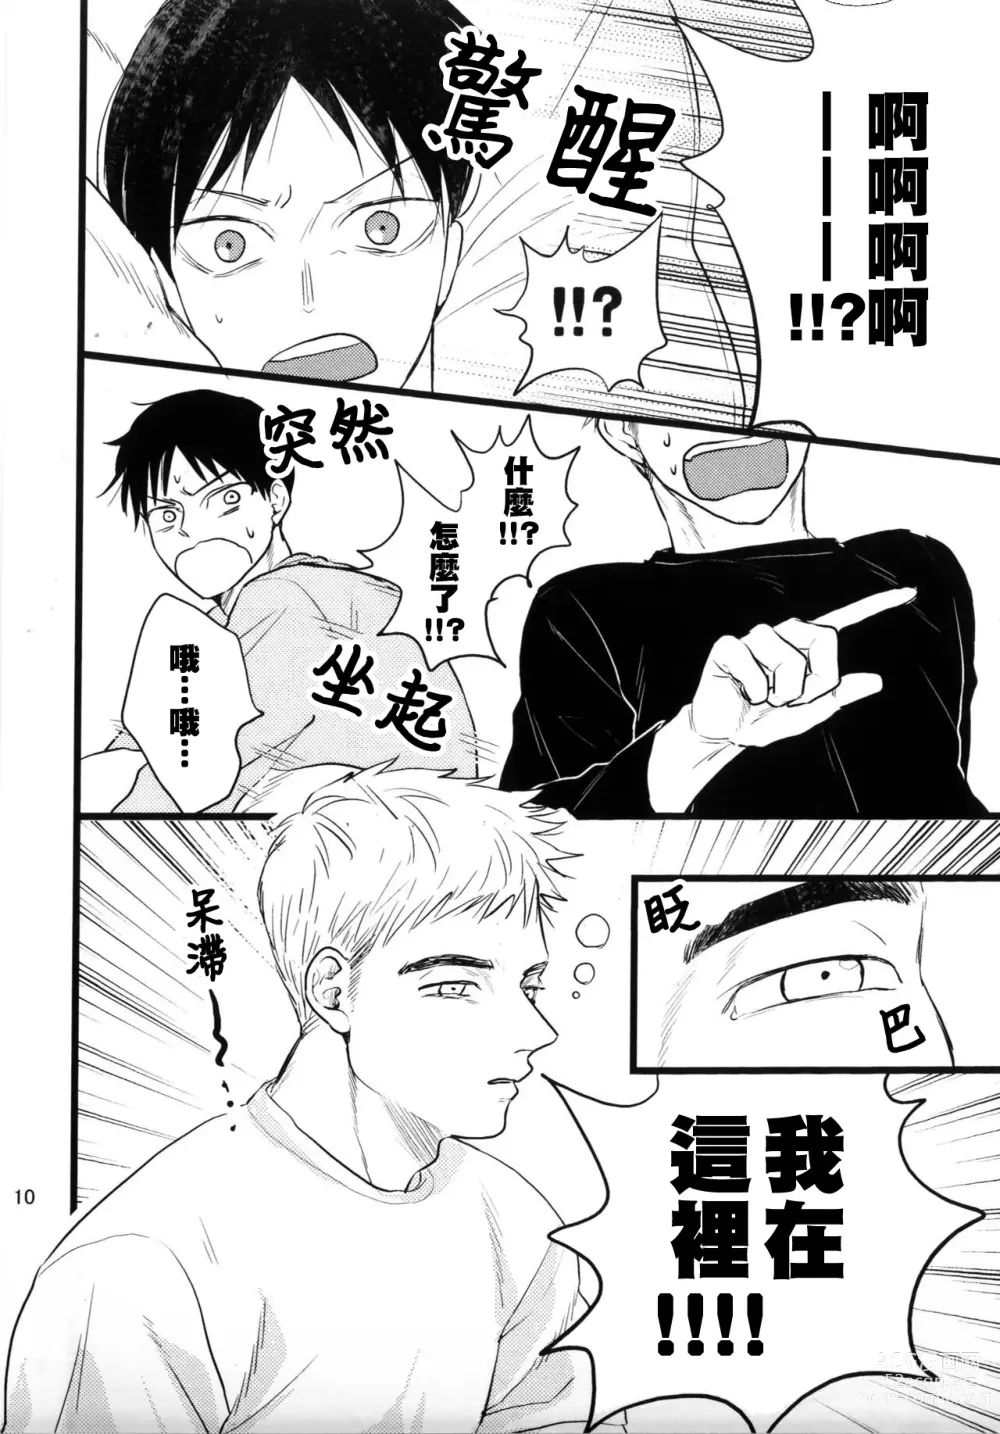 Page 8 of doujinshi Umi ga Nakano de Nakano ga Umi de